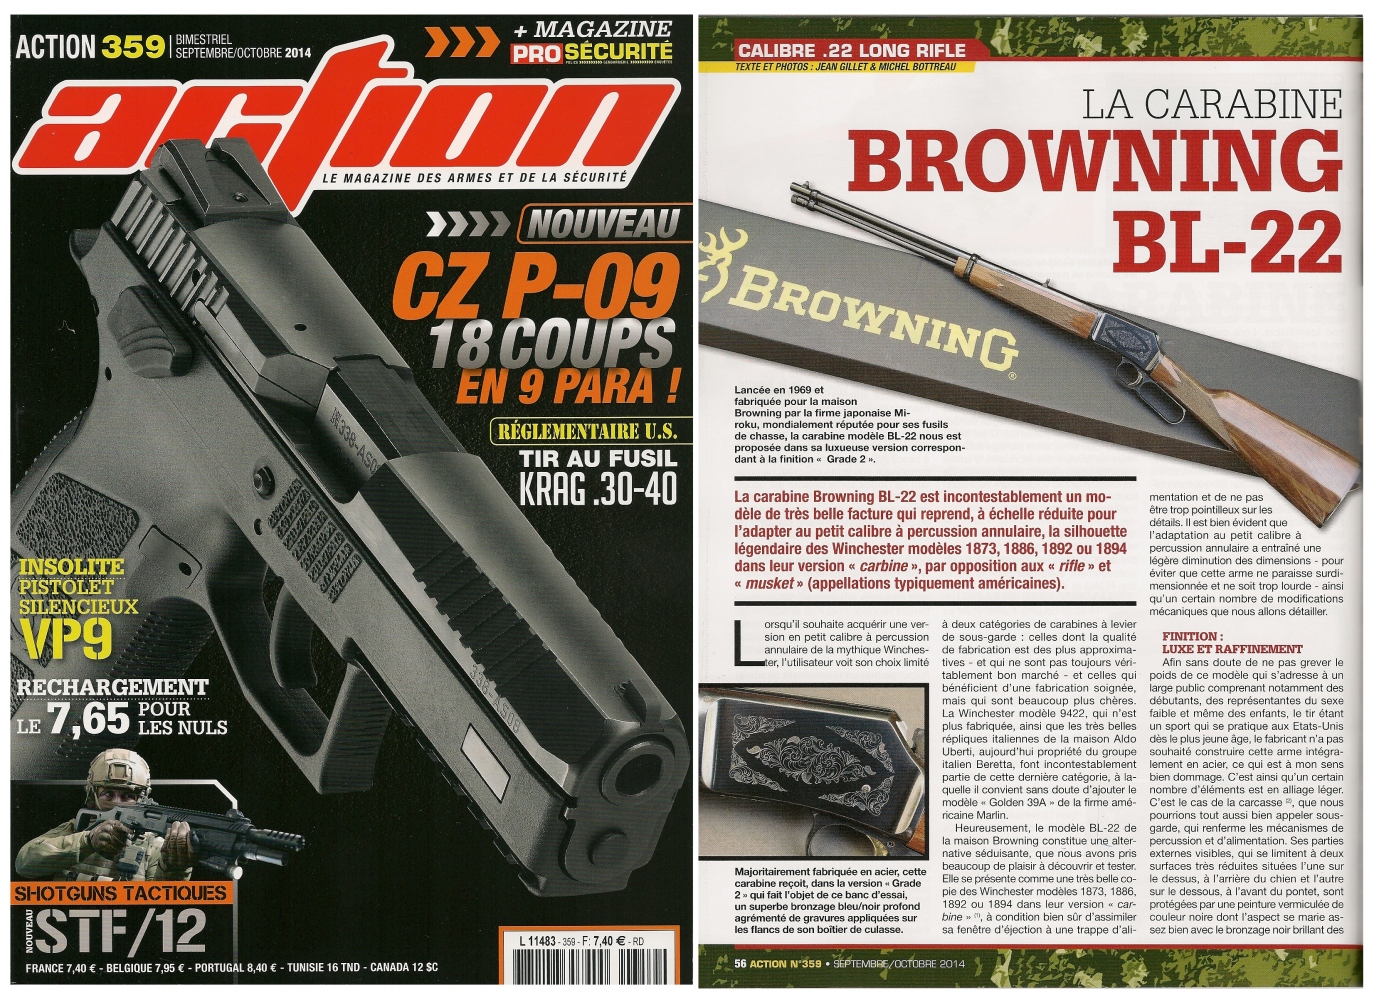 Le banc d'essai de la carabine Browning BL-22 a été publié sur 6 pages dans le magazine Action n° 359 (septembre-octobre 2014)